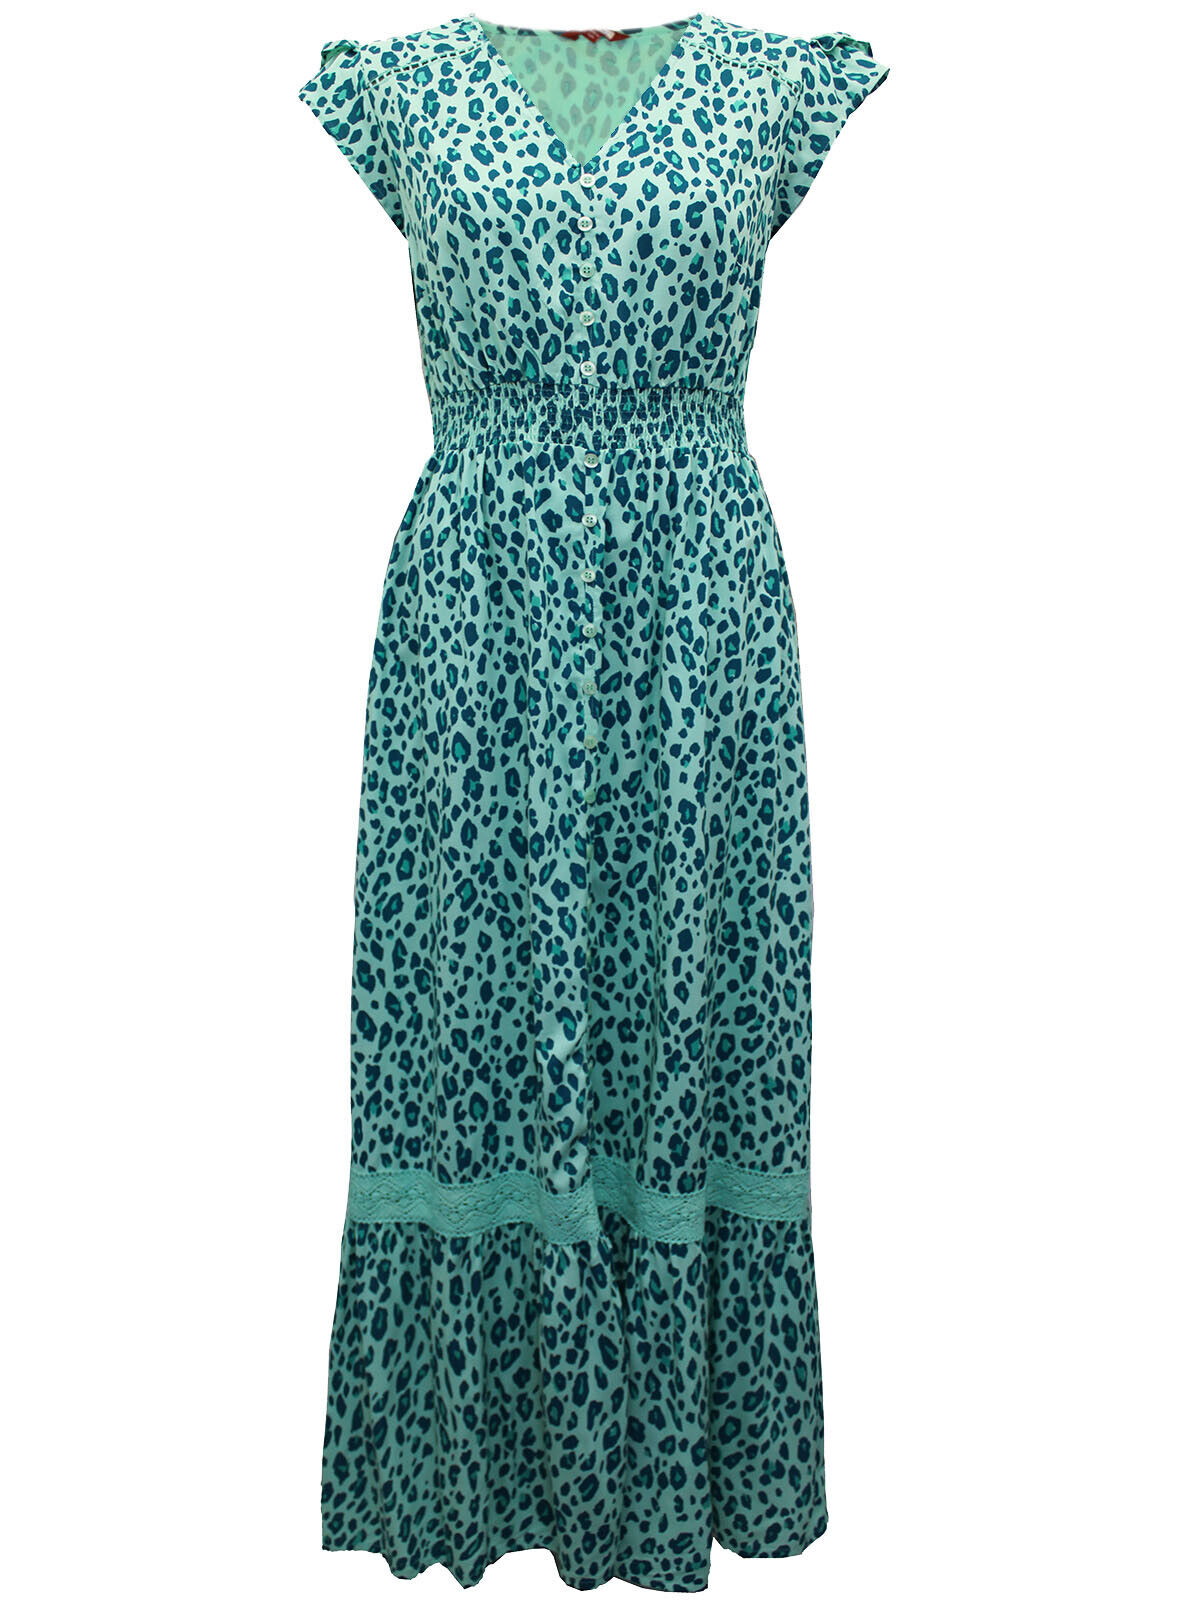 EX Joe Brown Green Leopard Print Lace Maxi Dress 14 16 18 20 22 24 26 28 RRP £65